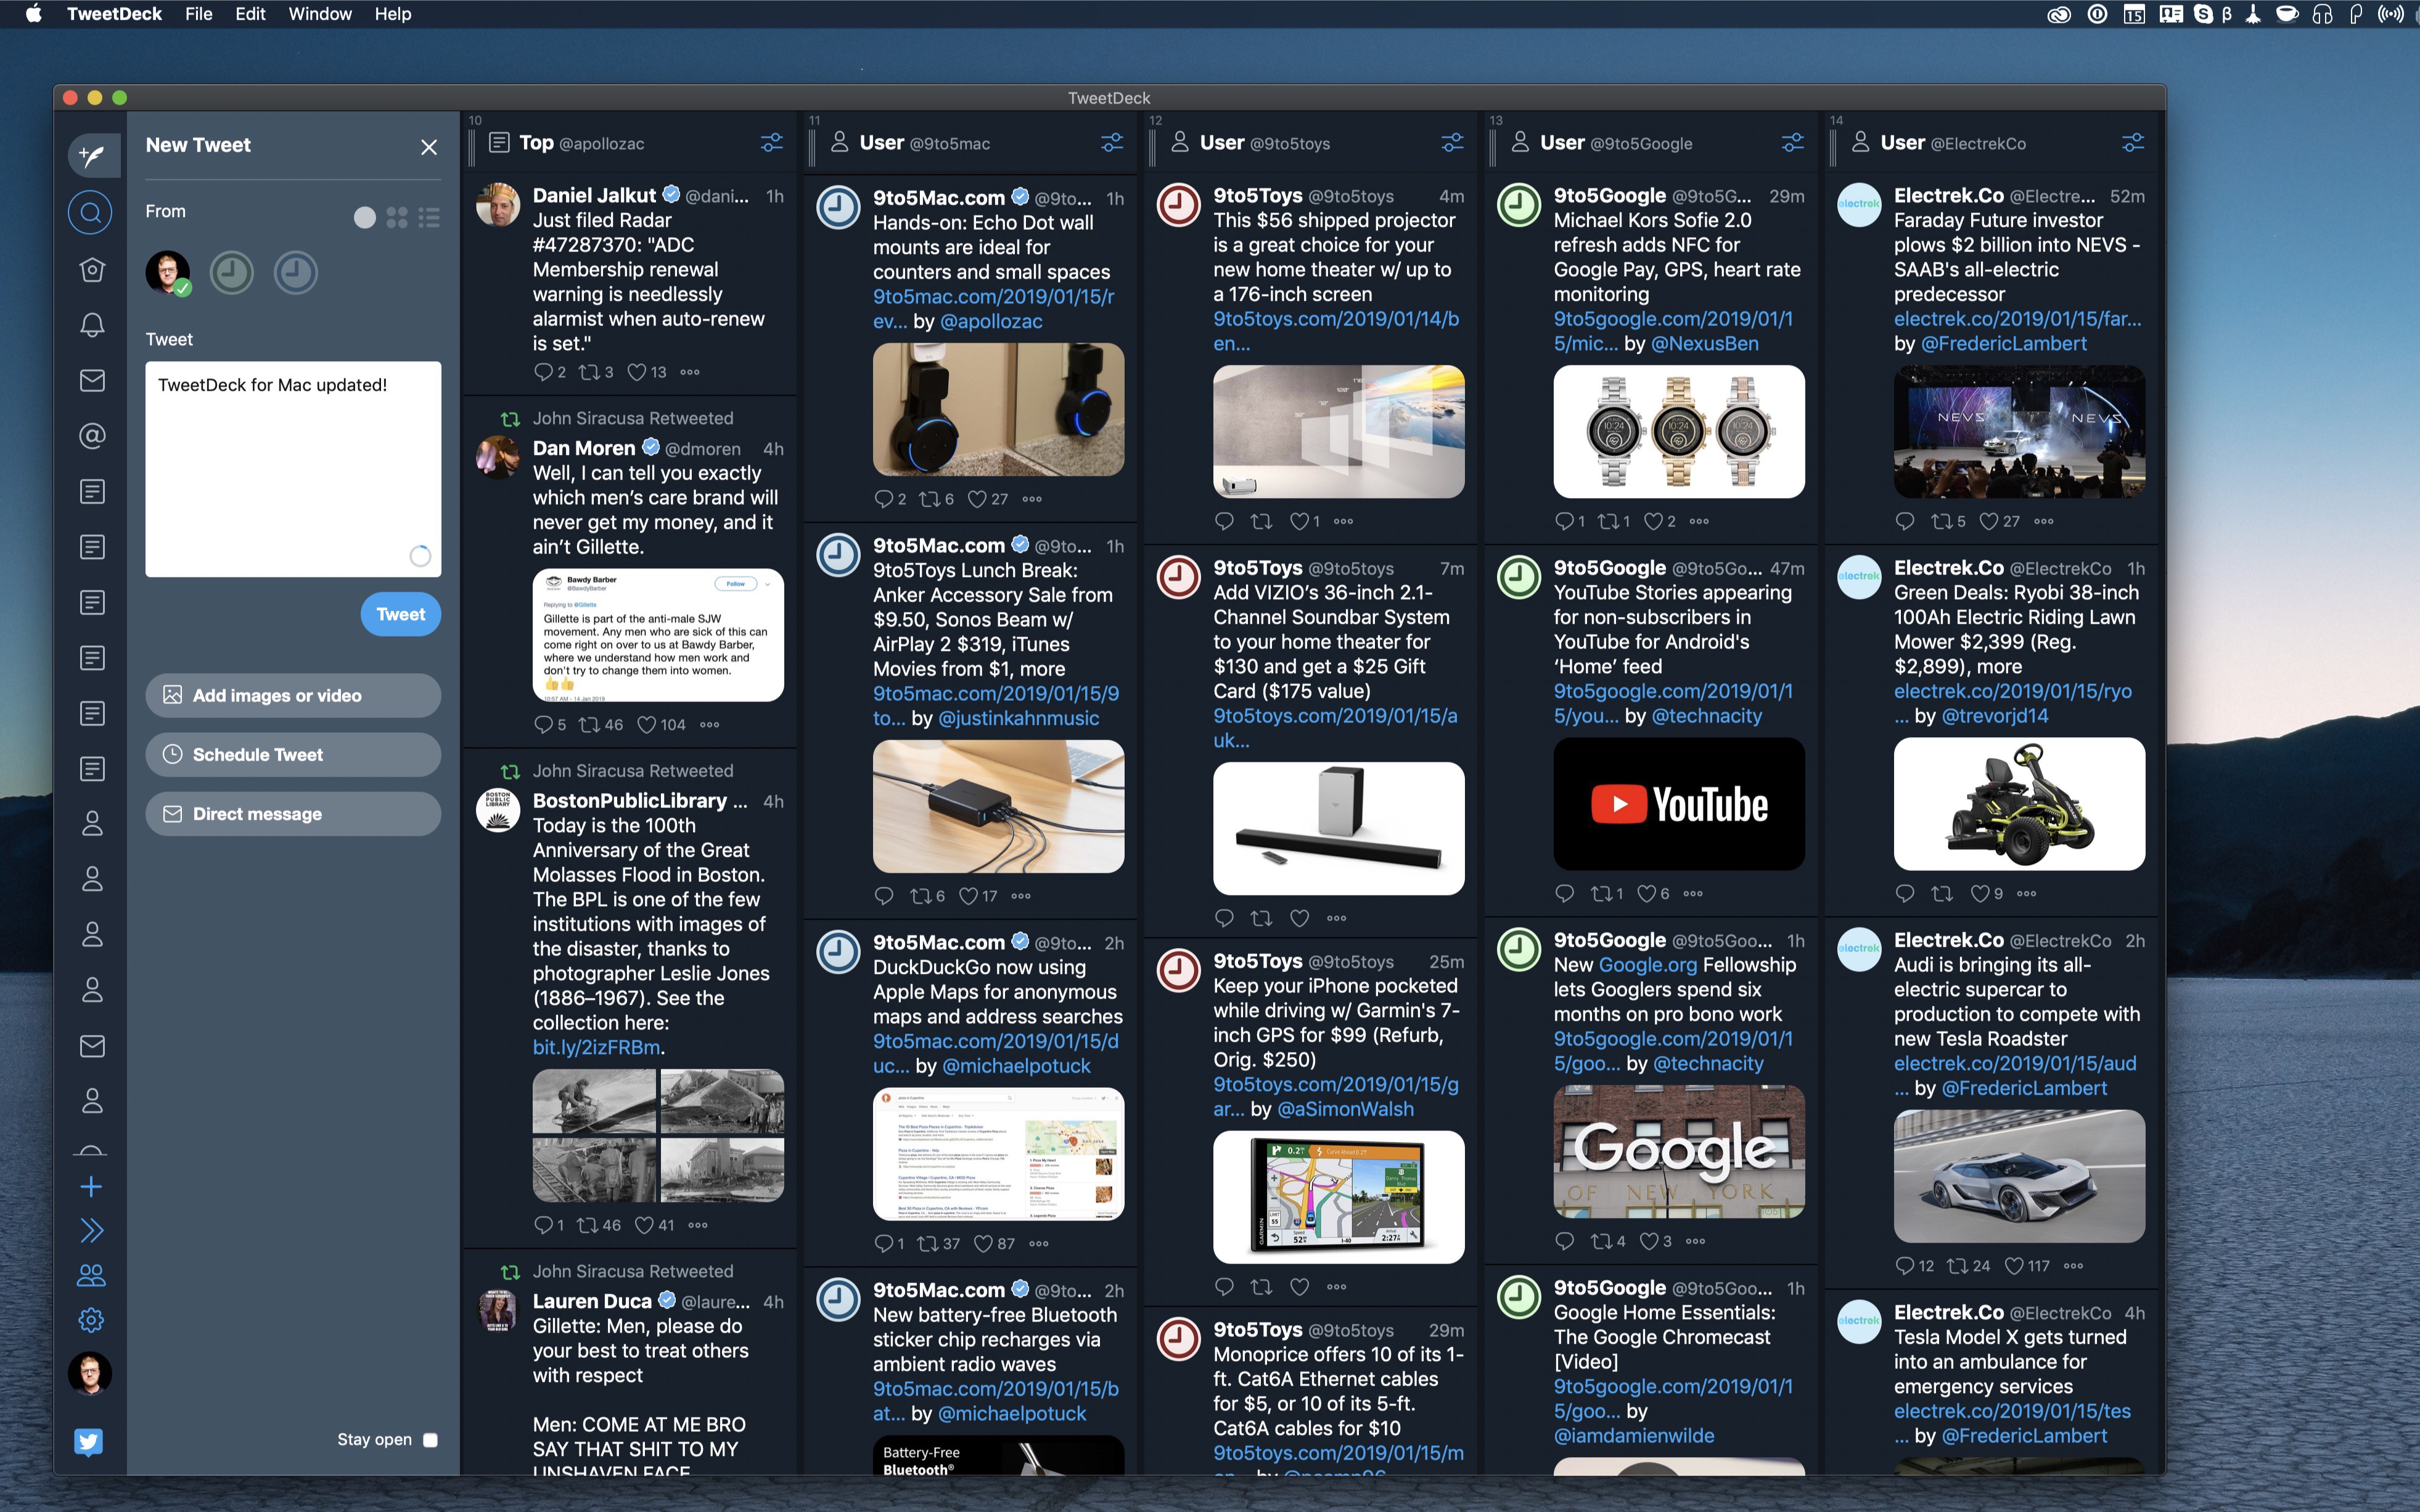 tweetdeck desktop for mac